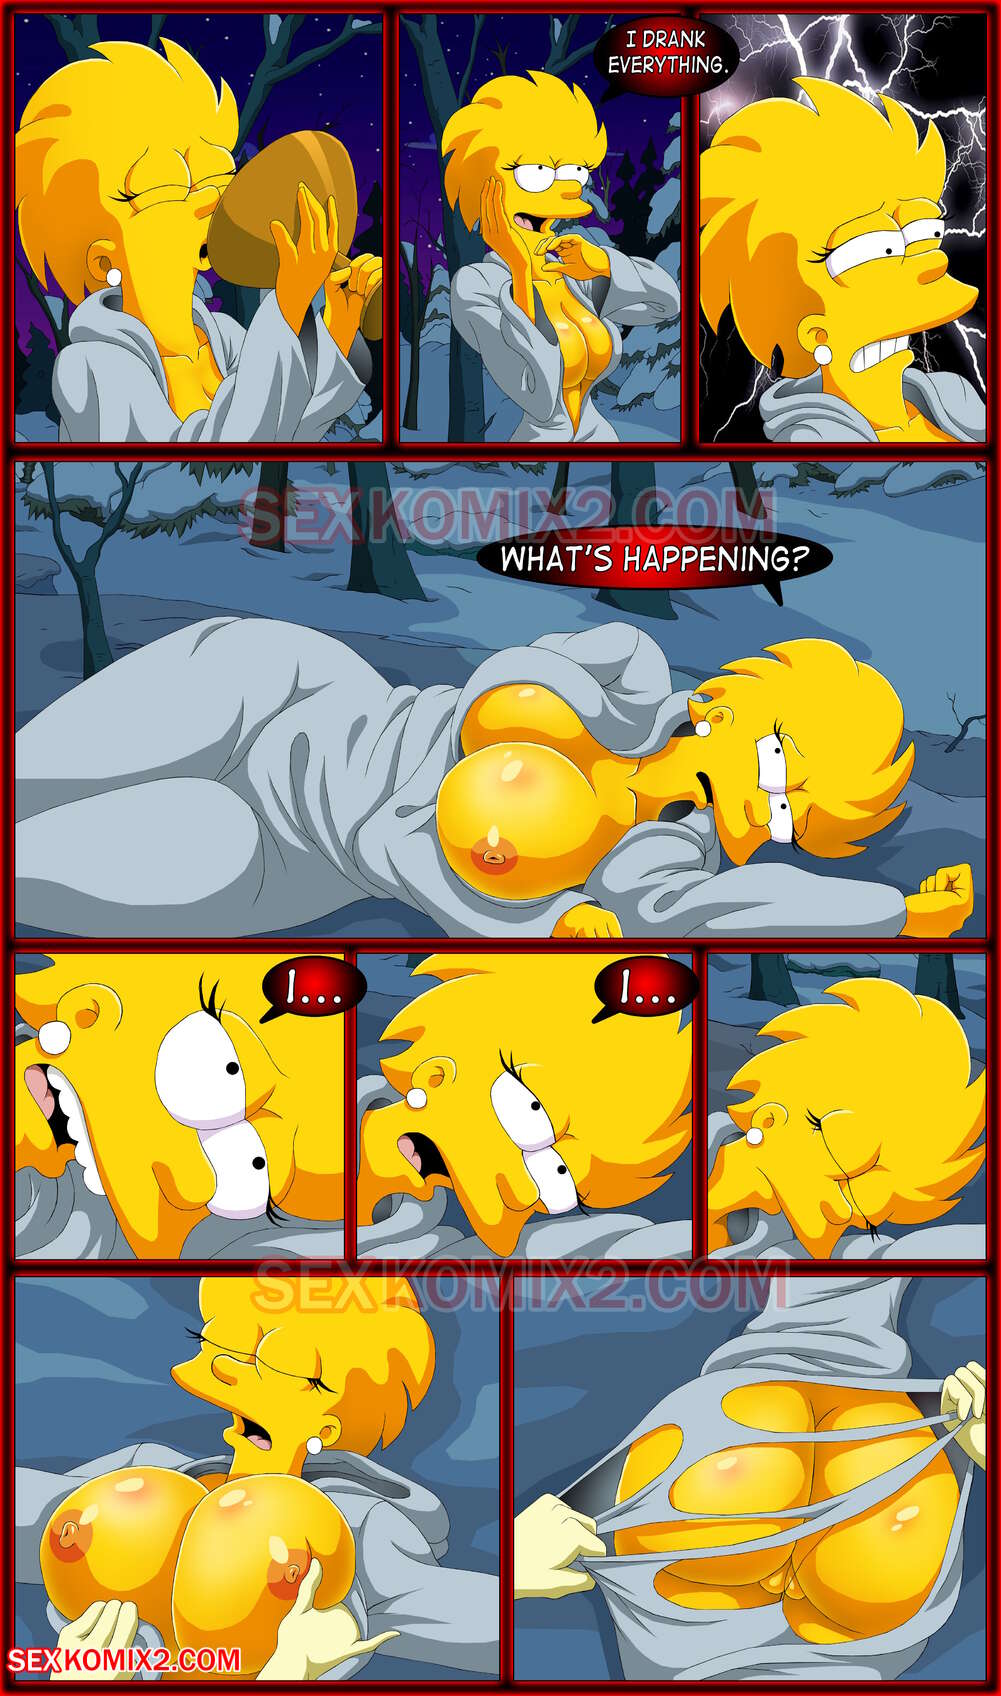 1001px x 1696px - The Simpsons - Witch Time â€“ SexKomix - Comics Army